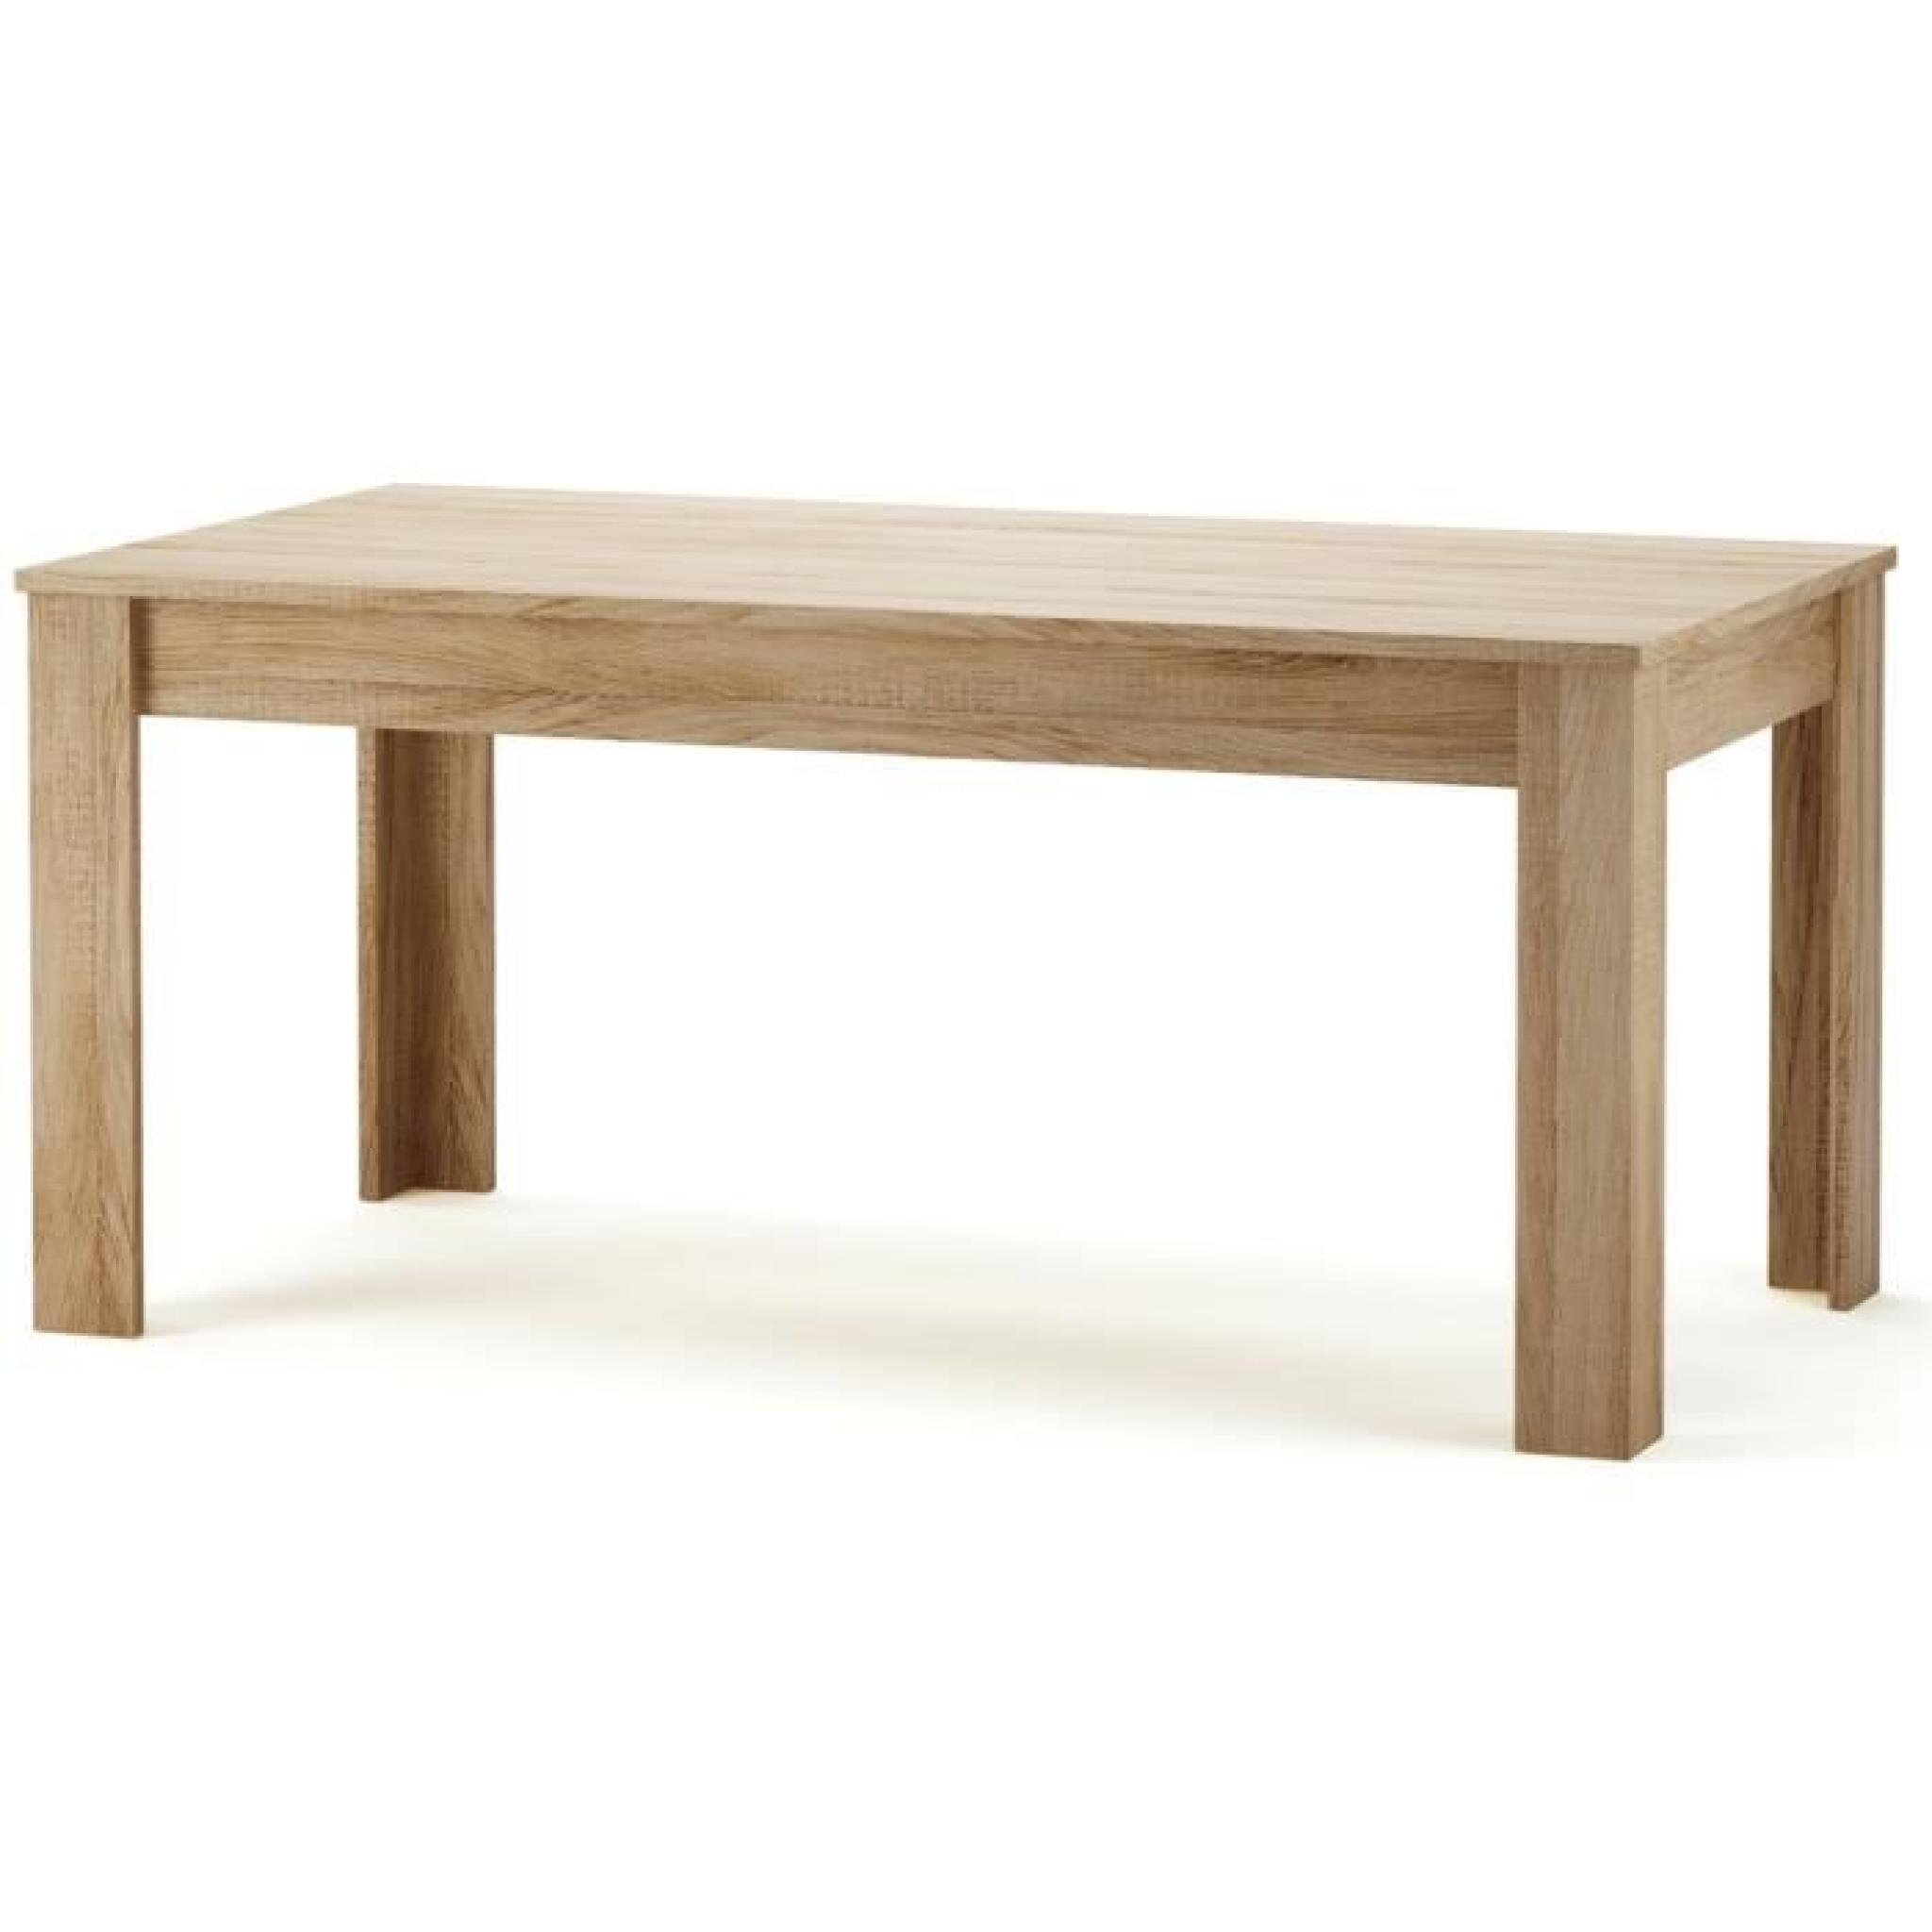 Table à manger rectangulaire en bois, 160 x 90 cm NAXIS Coloris chêne brossé